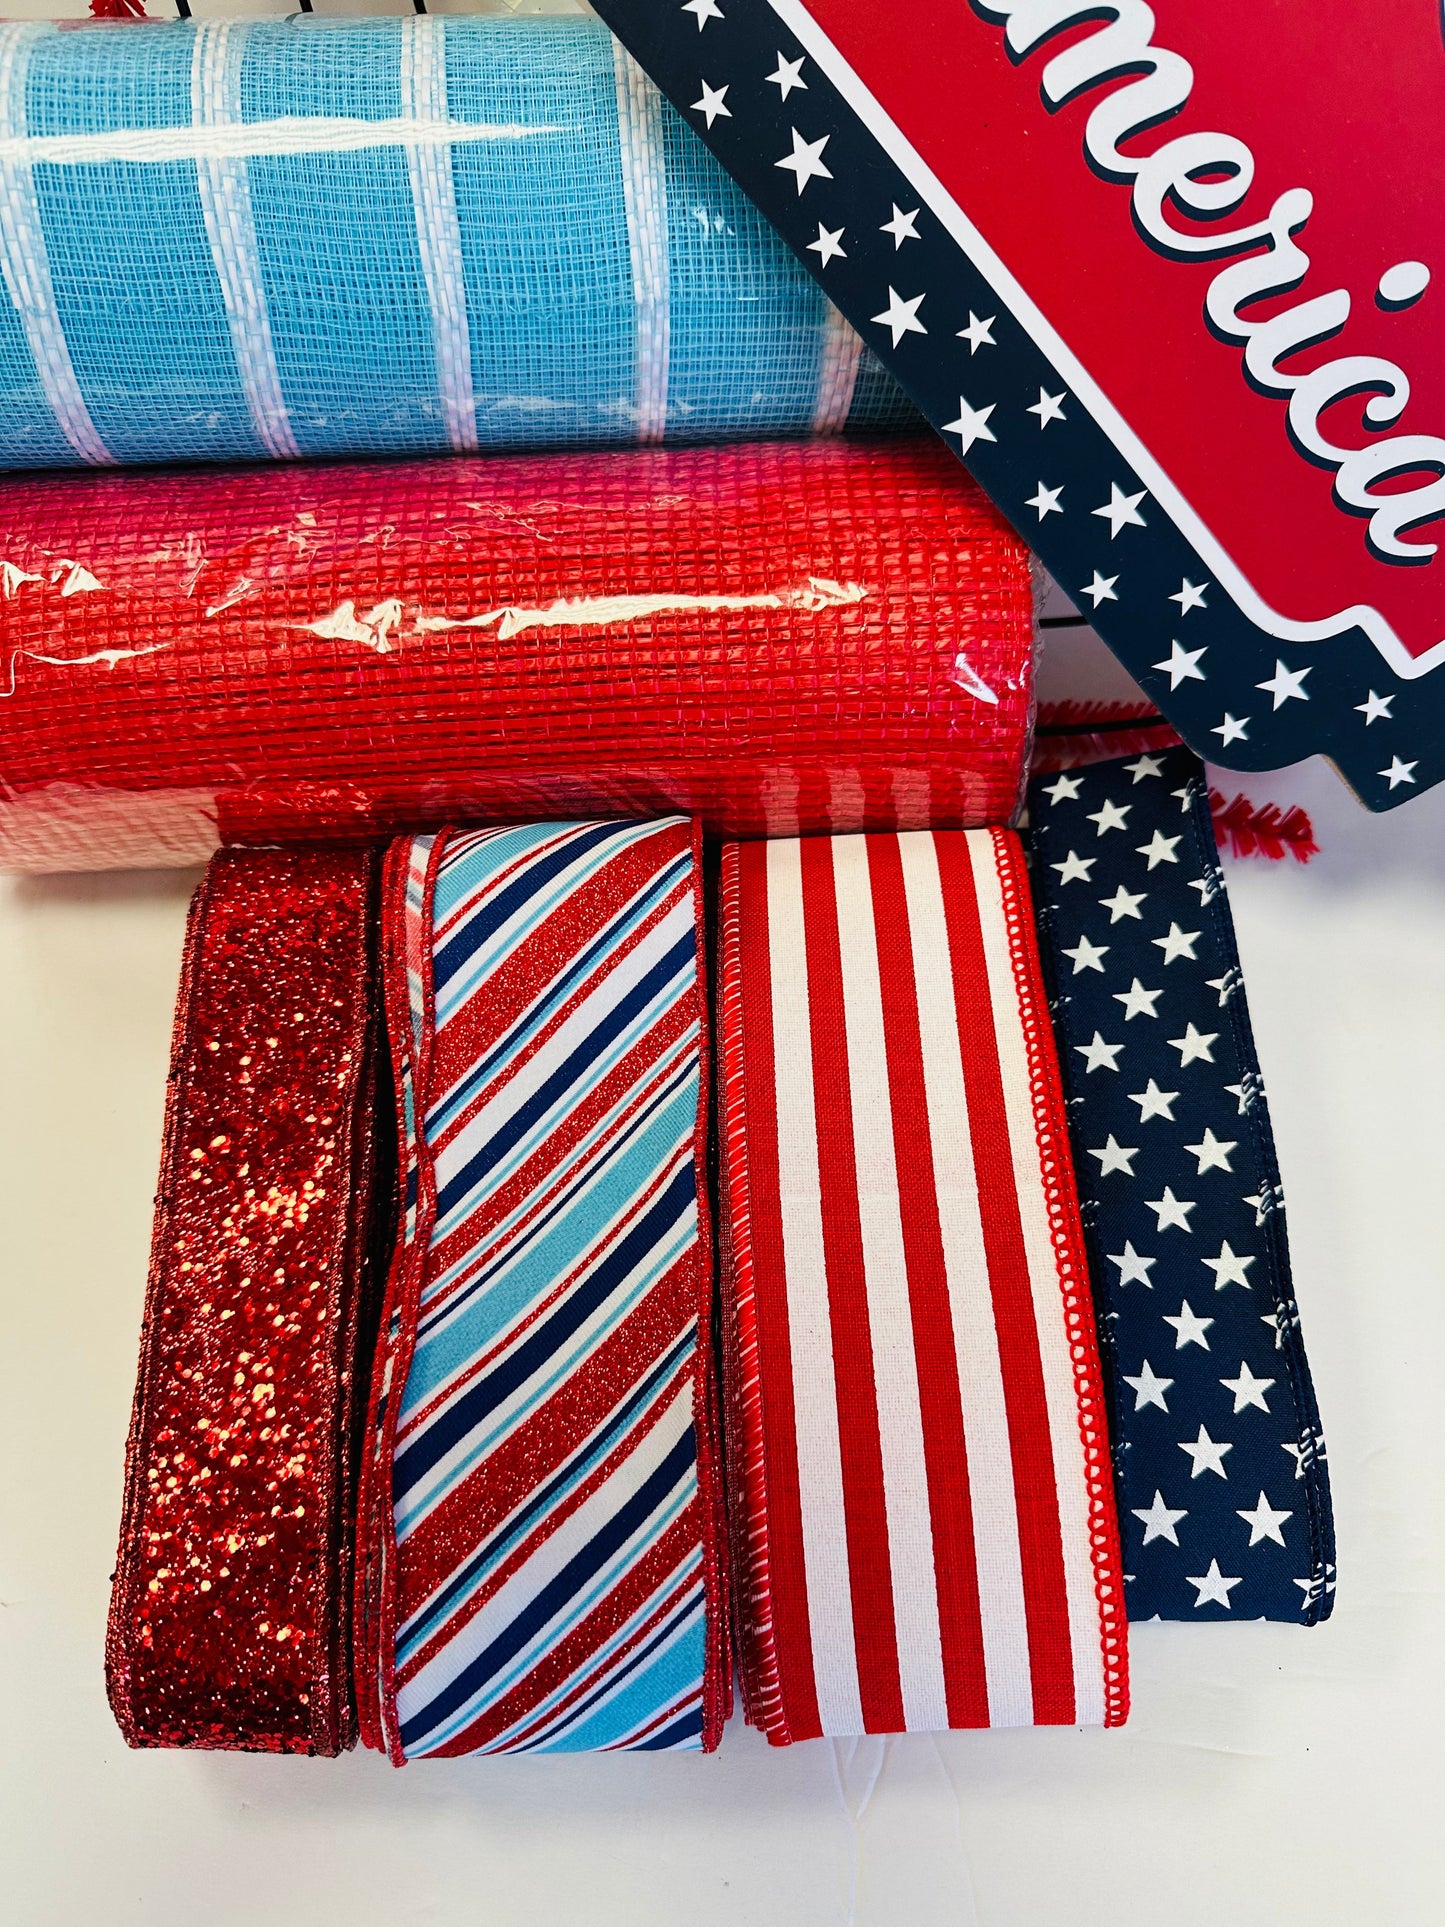 Party Kit - God Bless America Patriotic DIY Kit